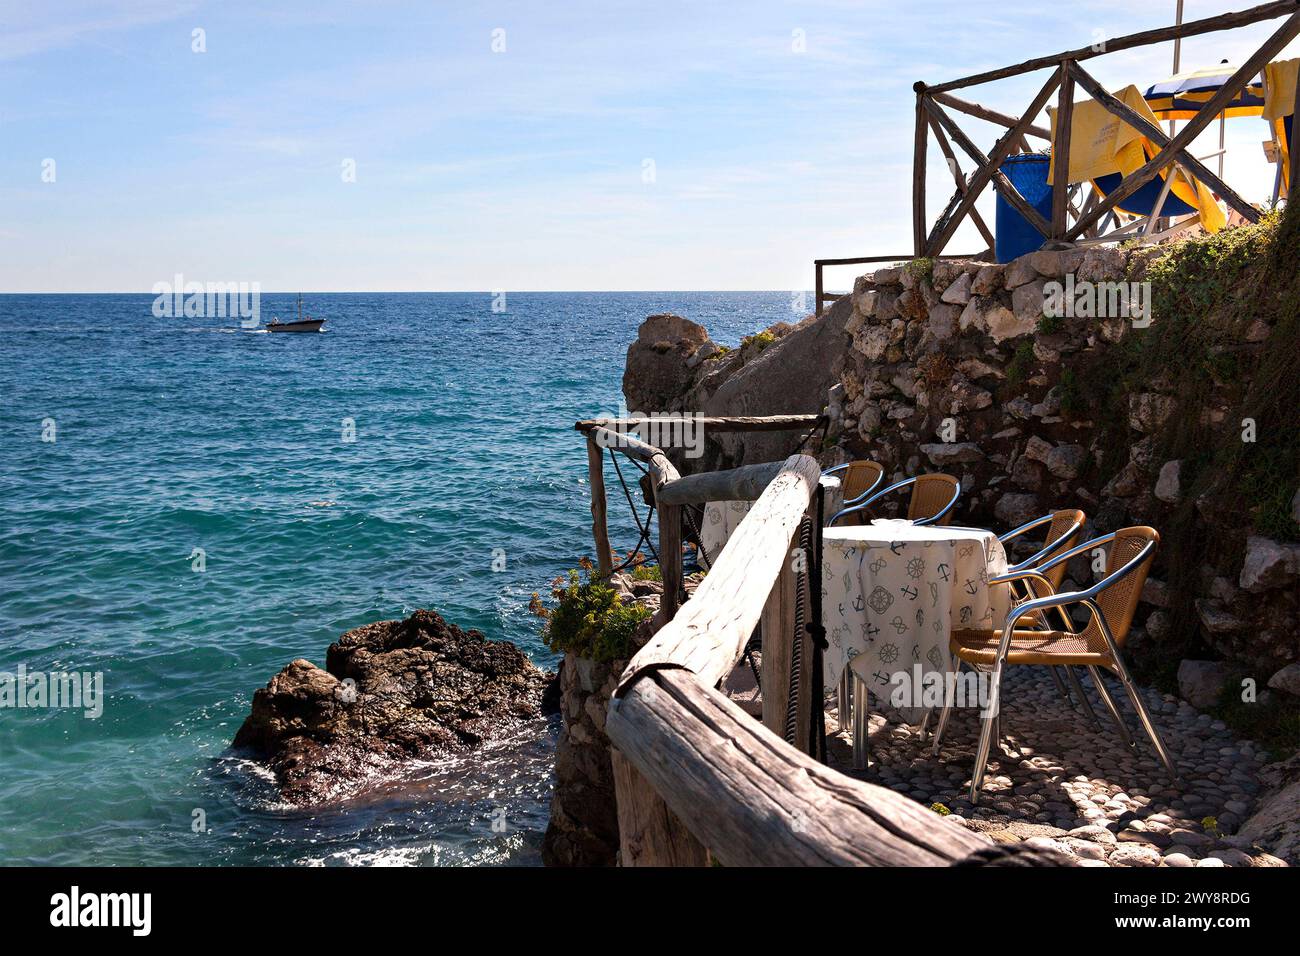 Coastal outdoor cafe setting, Marina Piccola Capri, Campania, Italy, Europe Stock Photo